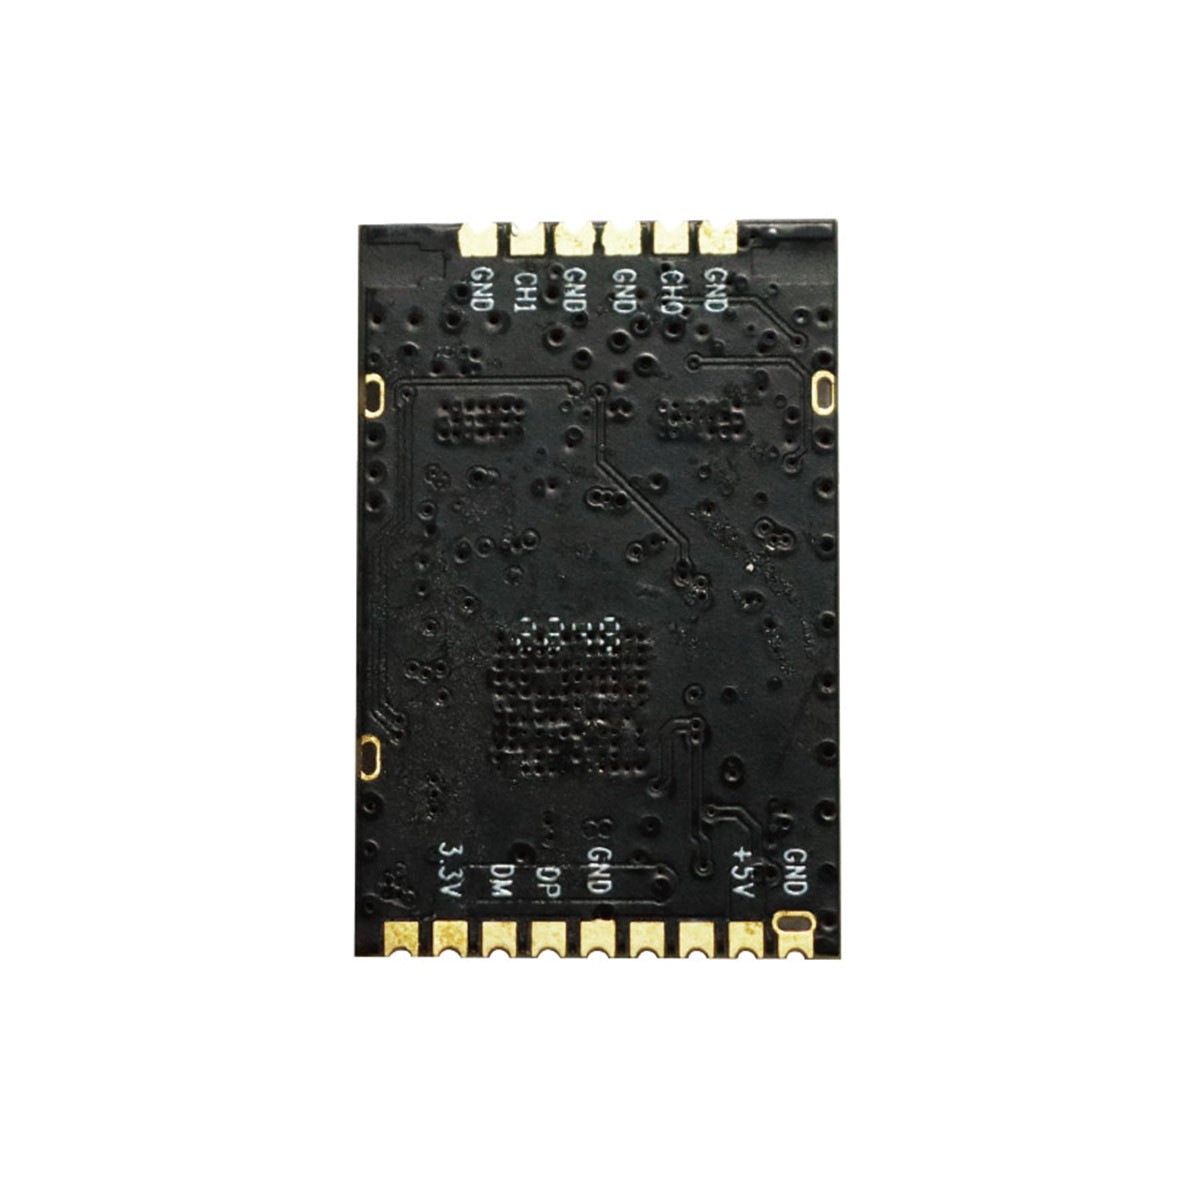 N5-A 嵌入式大功率 5G USB 无线模块